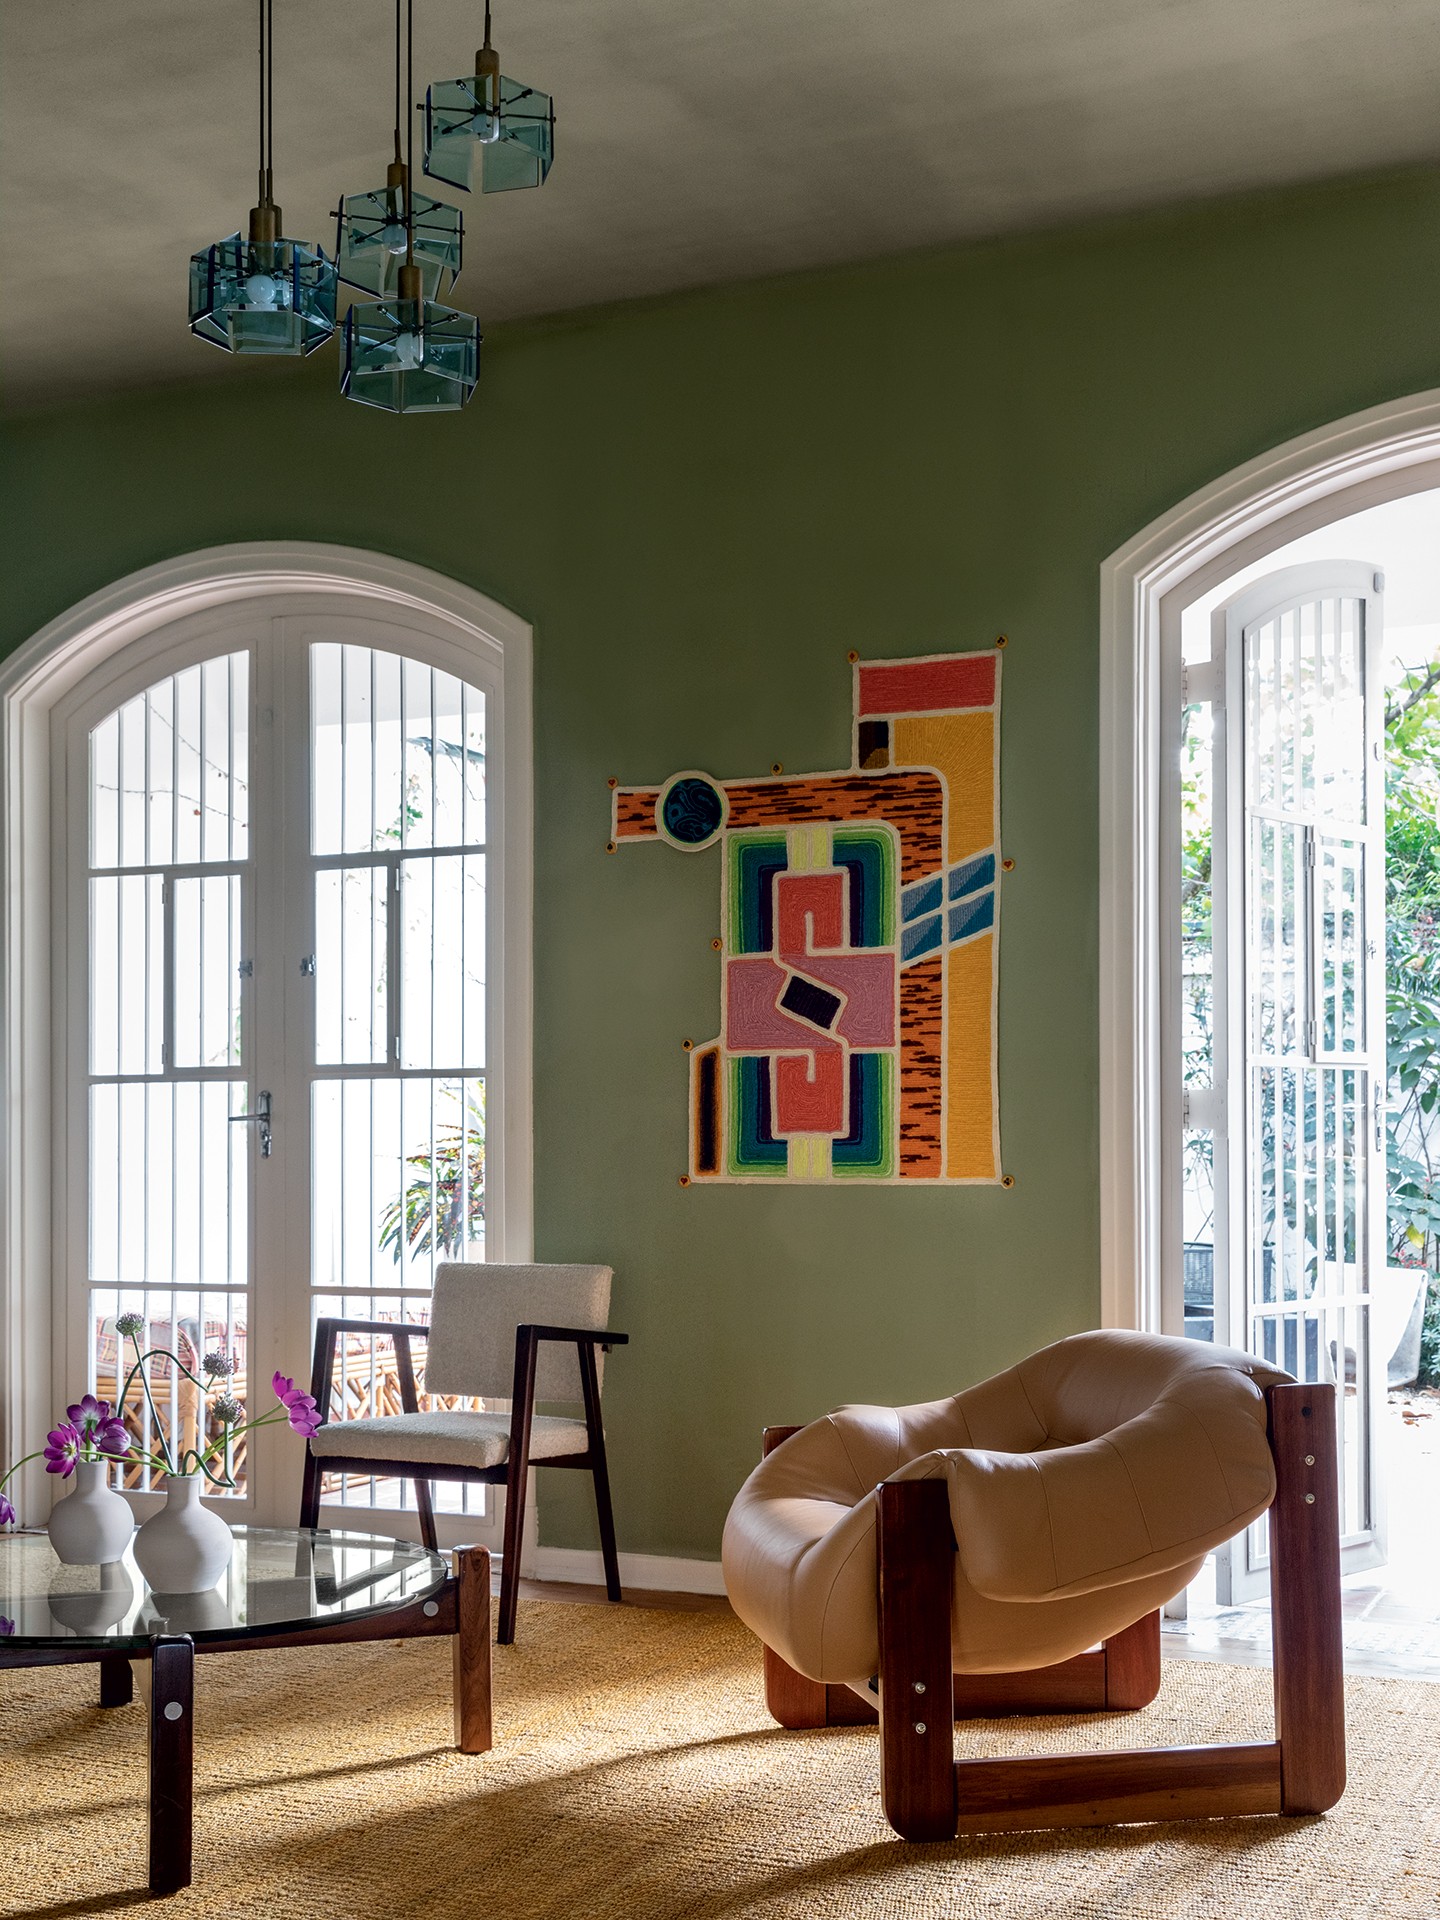 Casa dos anos 1940 tem arcos e cores fortes em decoração despretensiosa (Foto: Ruy Teixeira)